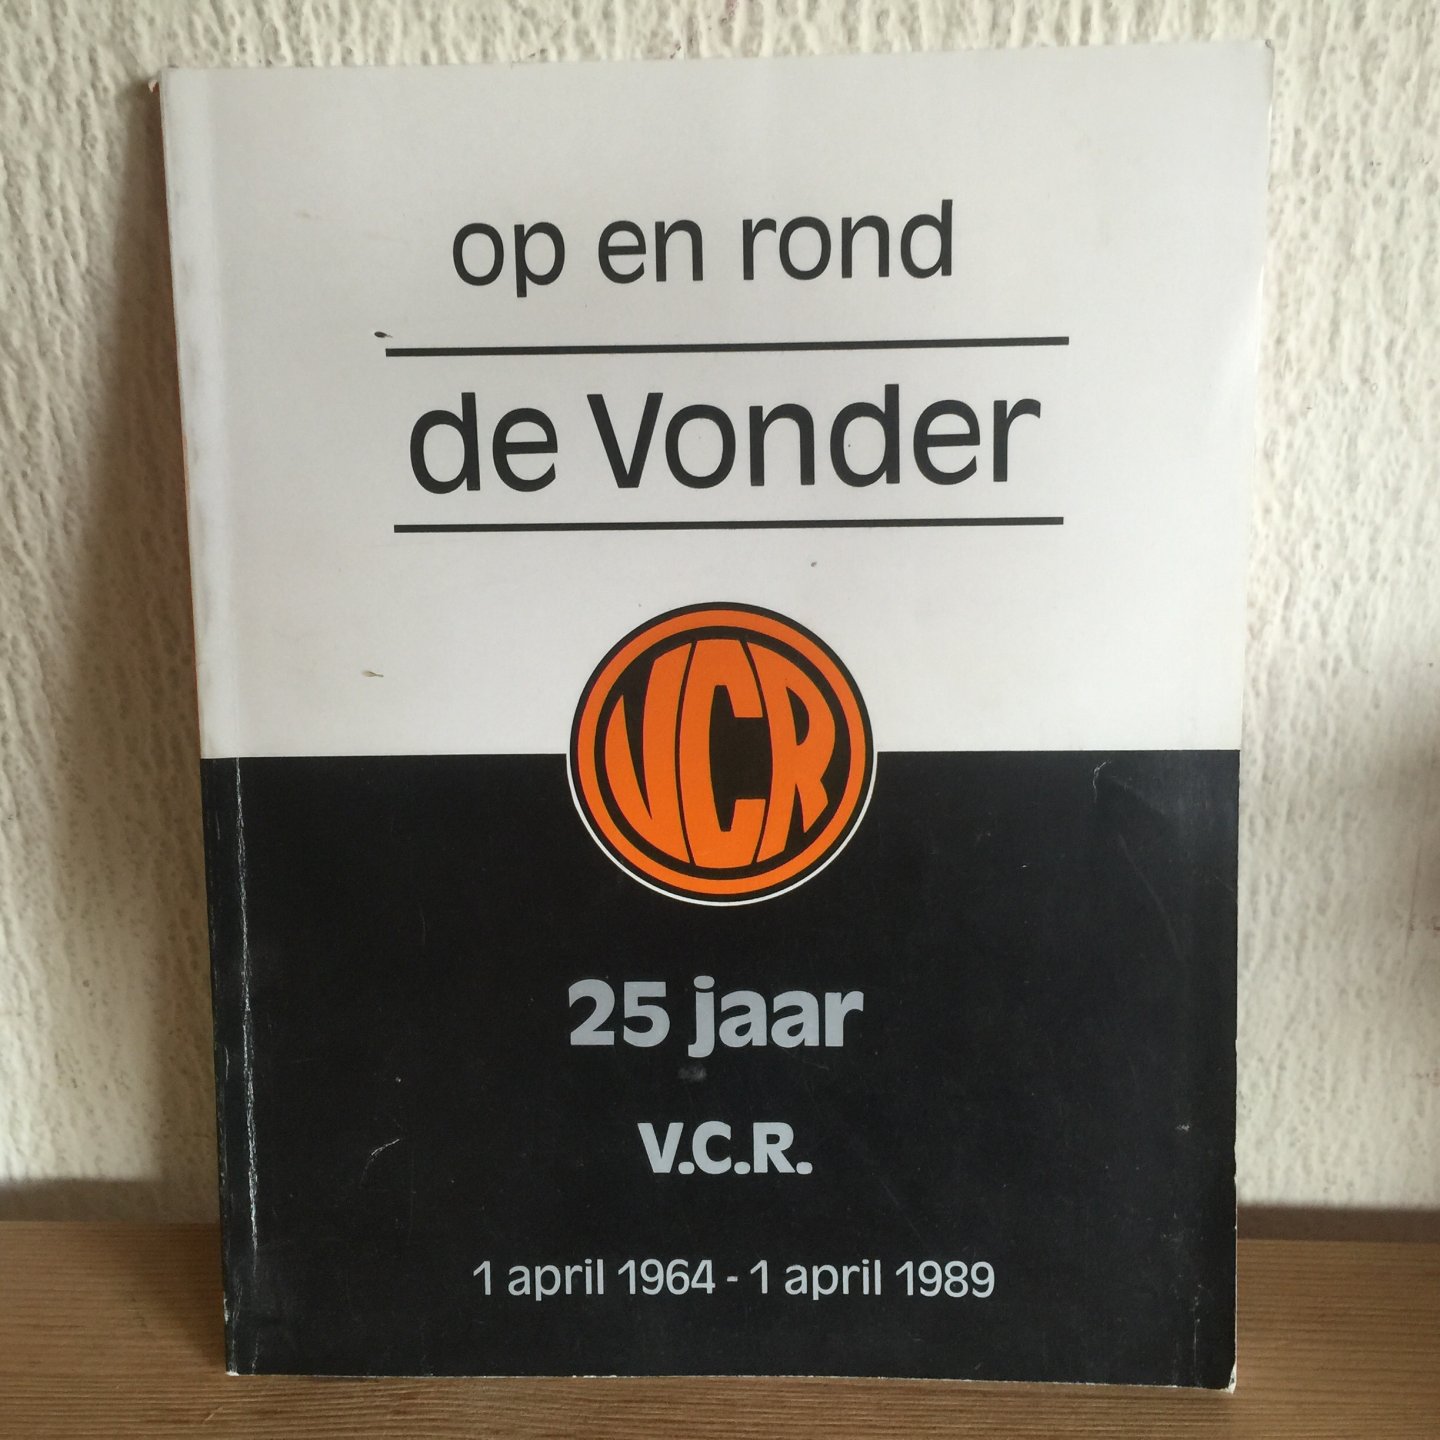  - Op en rond de VONDER 25 jaar voetbalclub V. C. R.